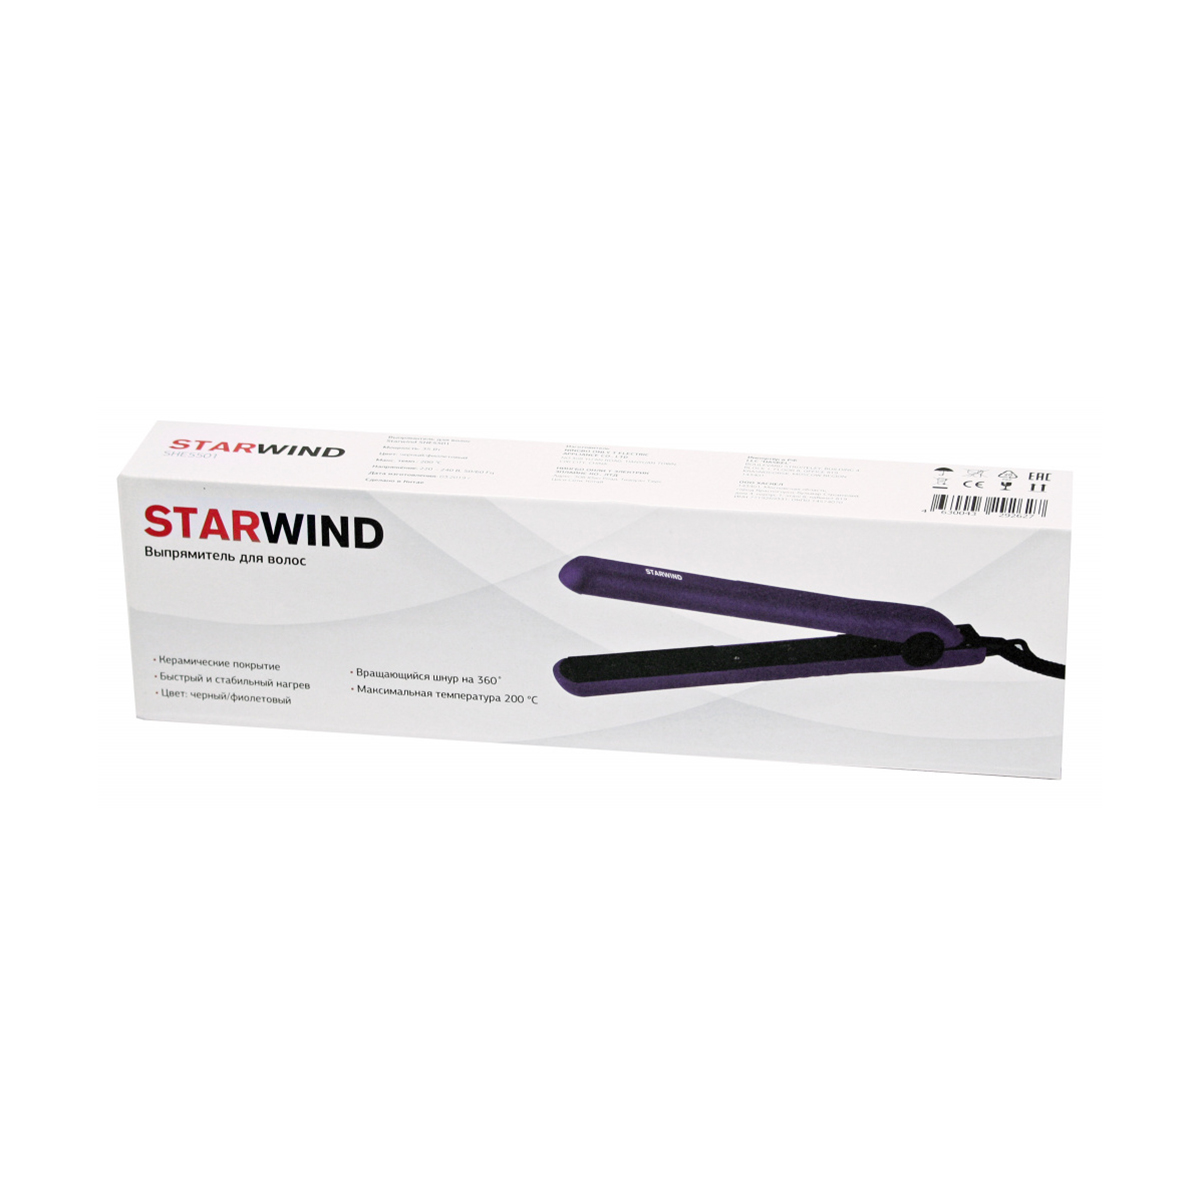 Выпрямитель для волос she5501  25 вт (1/24) "starwind"